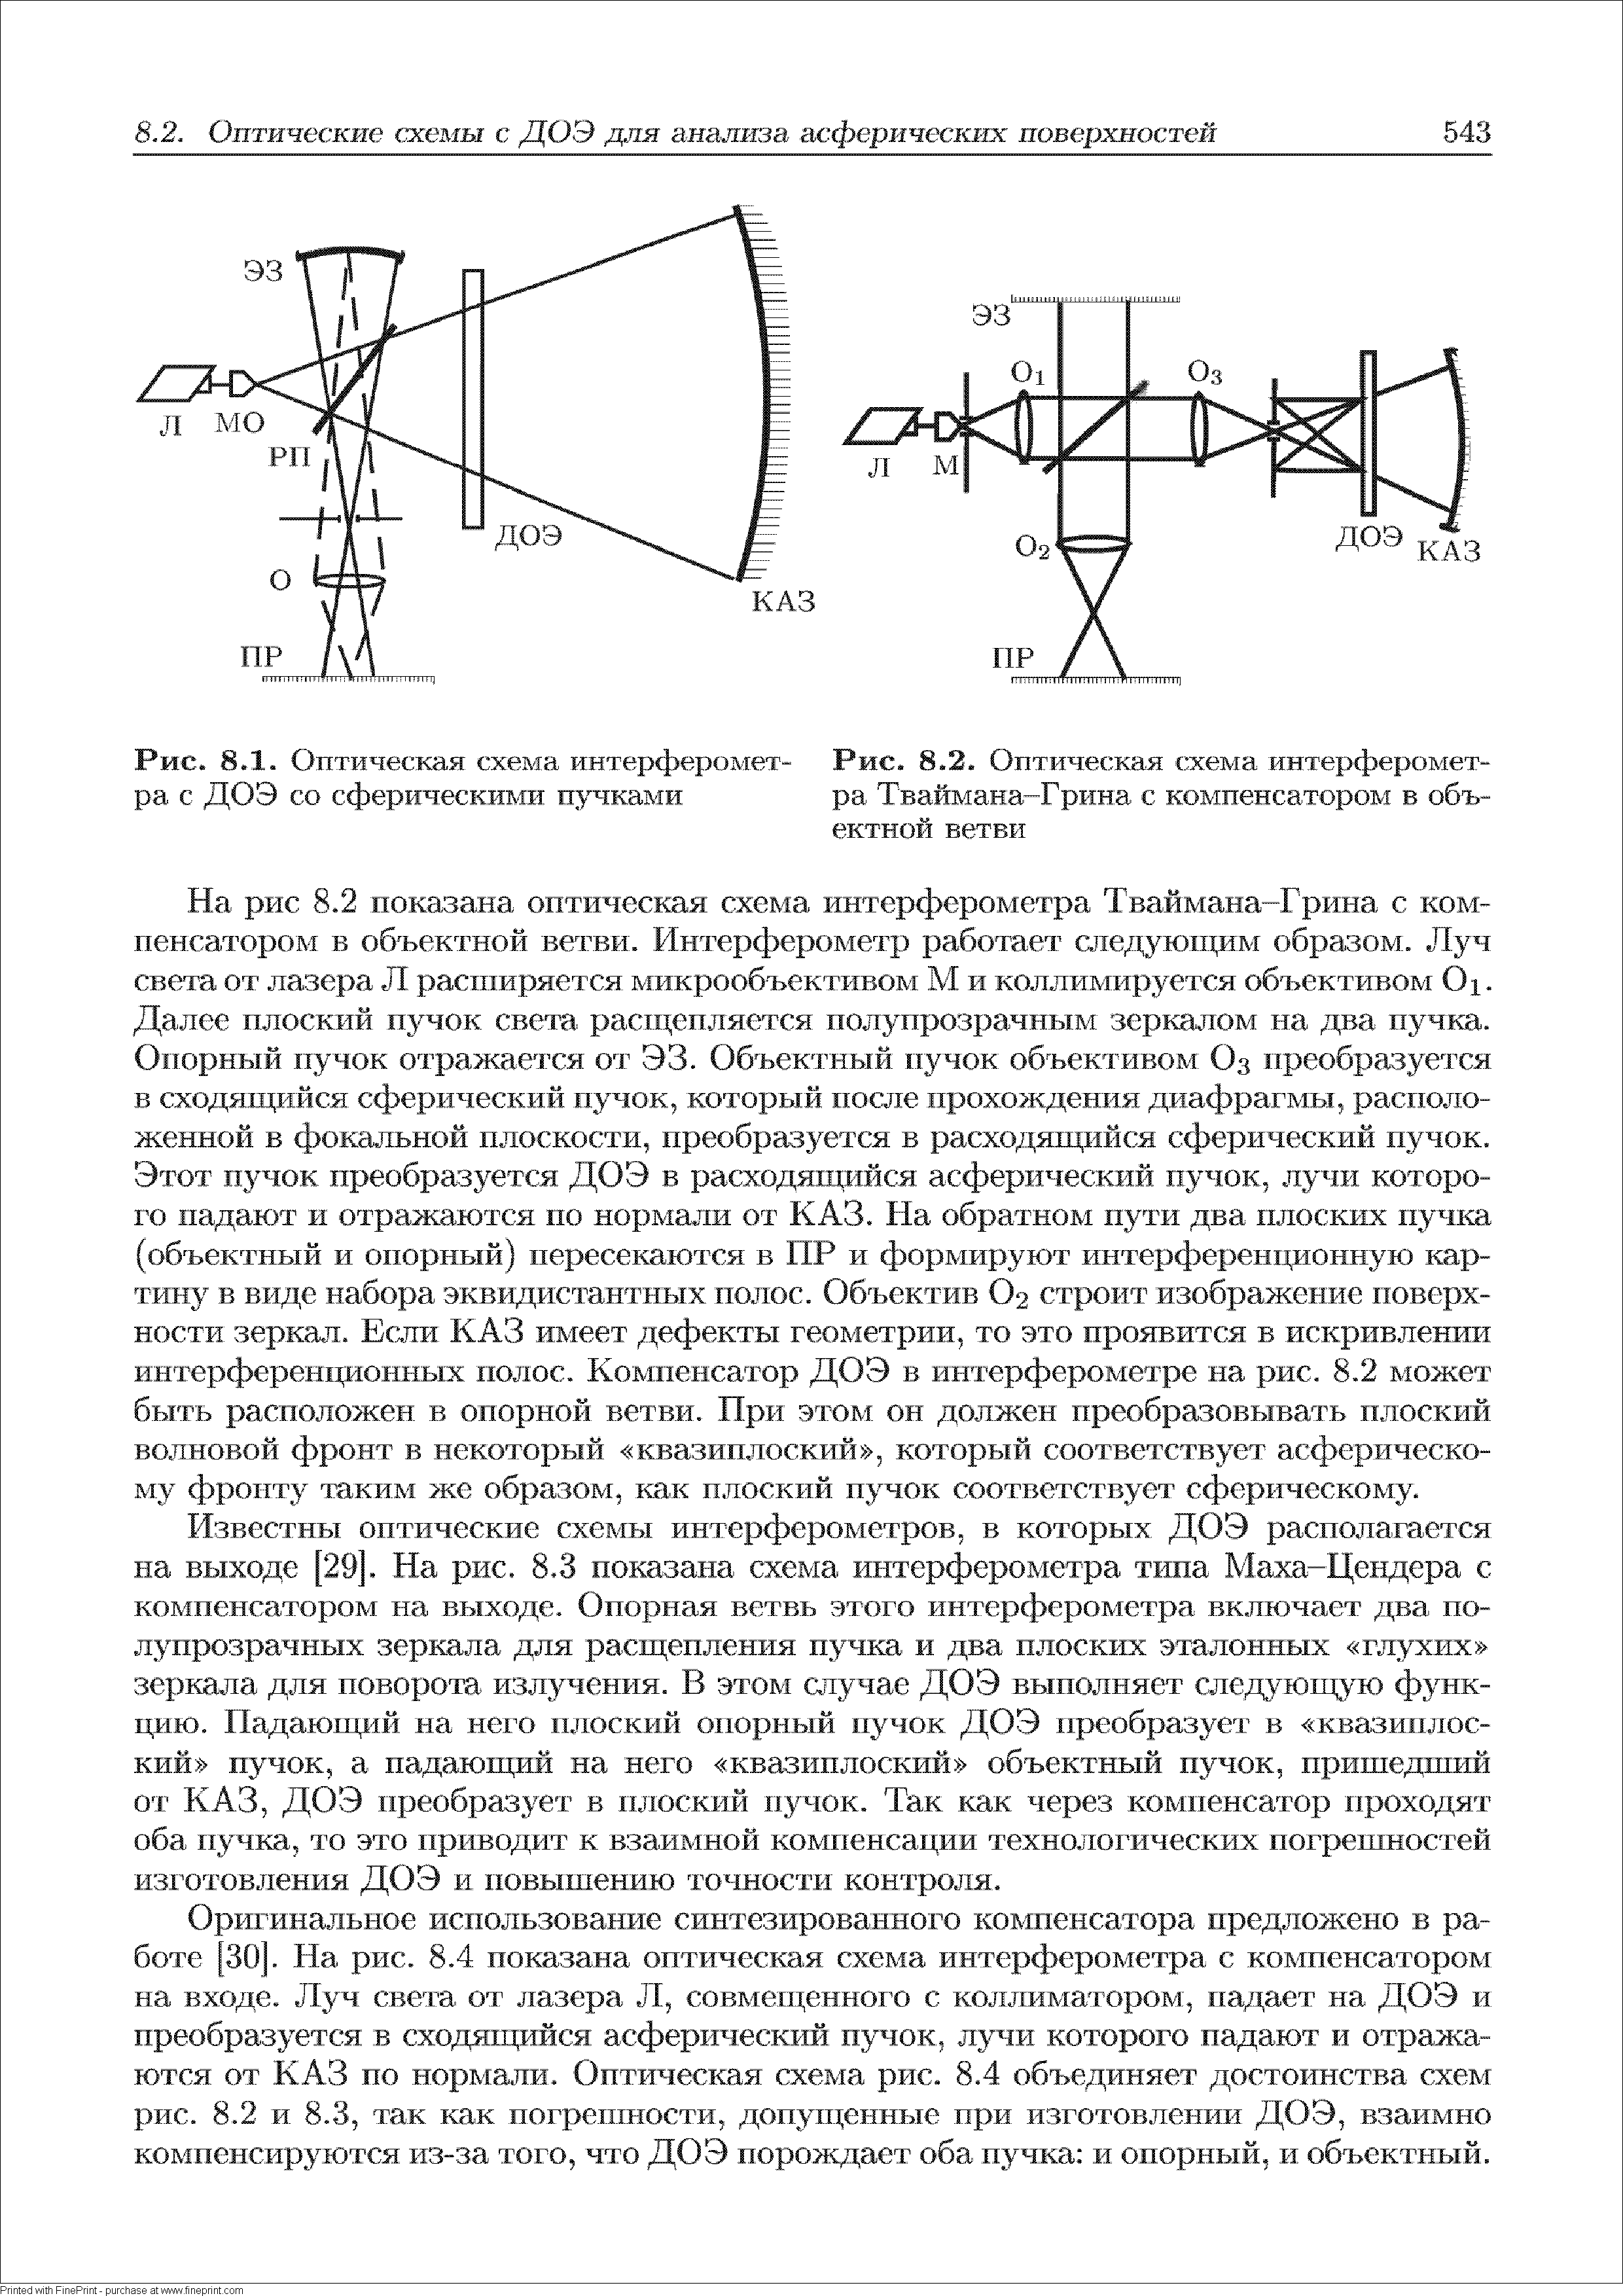 Рис. 8.2. Оптическая схема интерферометра Тваймана-Грина с компенсатором в объектной ветви
